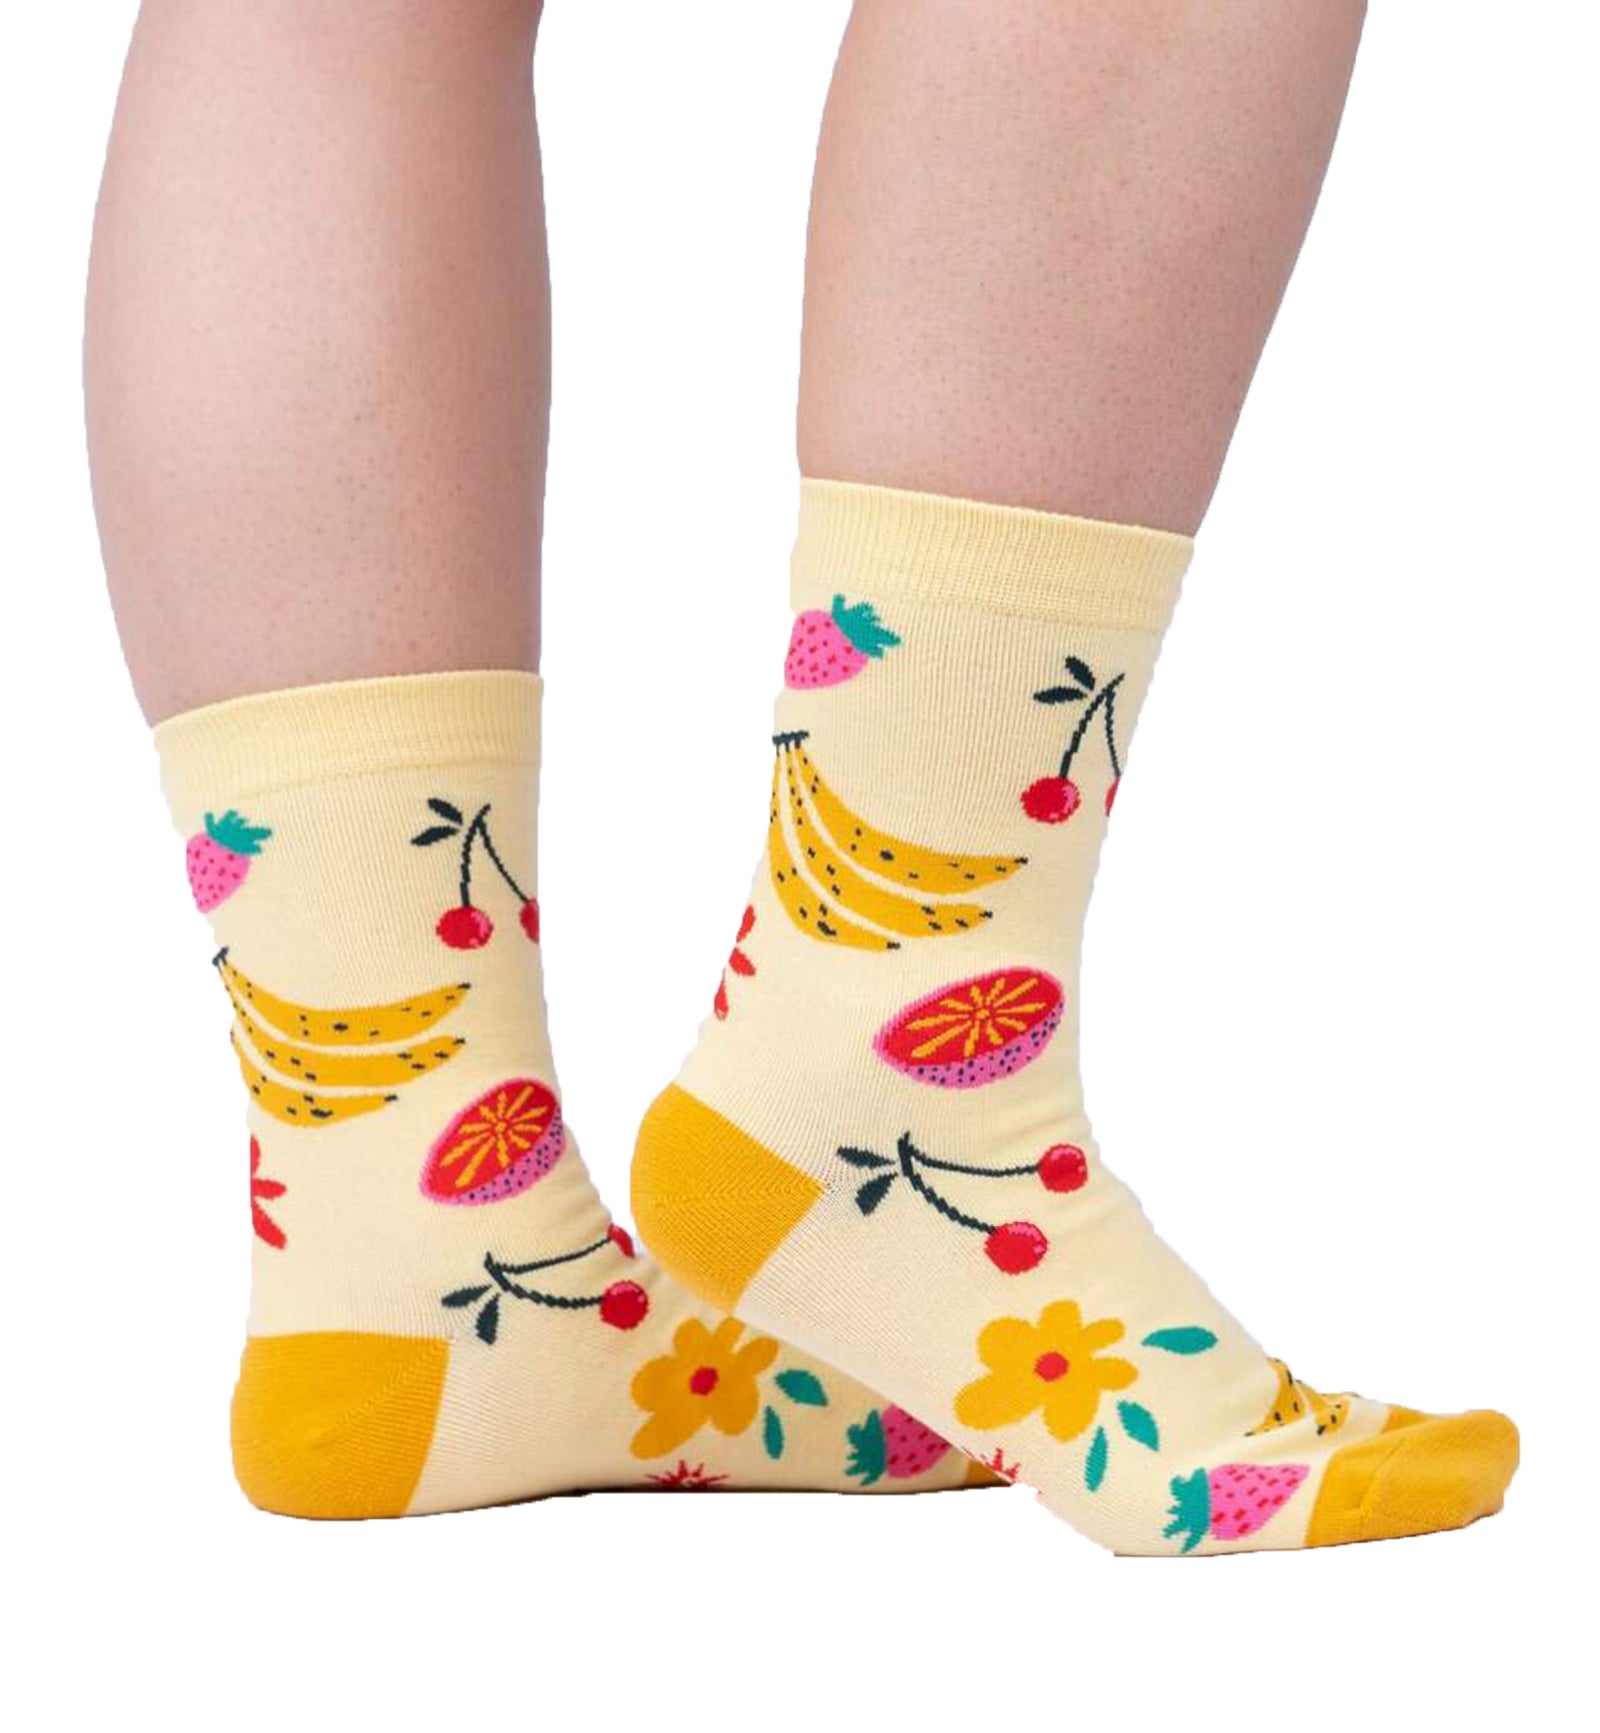 SOCK it to me Women's Crew Socks (W0447),Fruity Bloom - Fruity Bloom,One Size